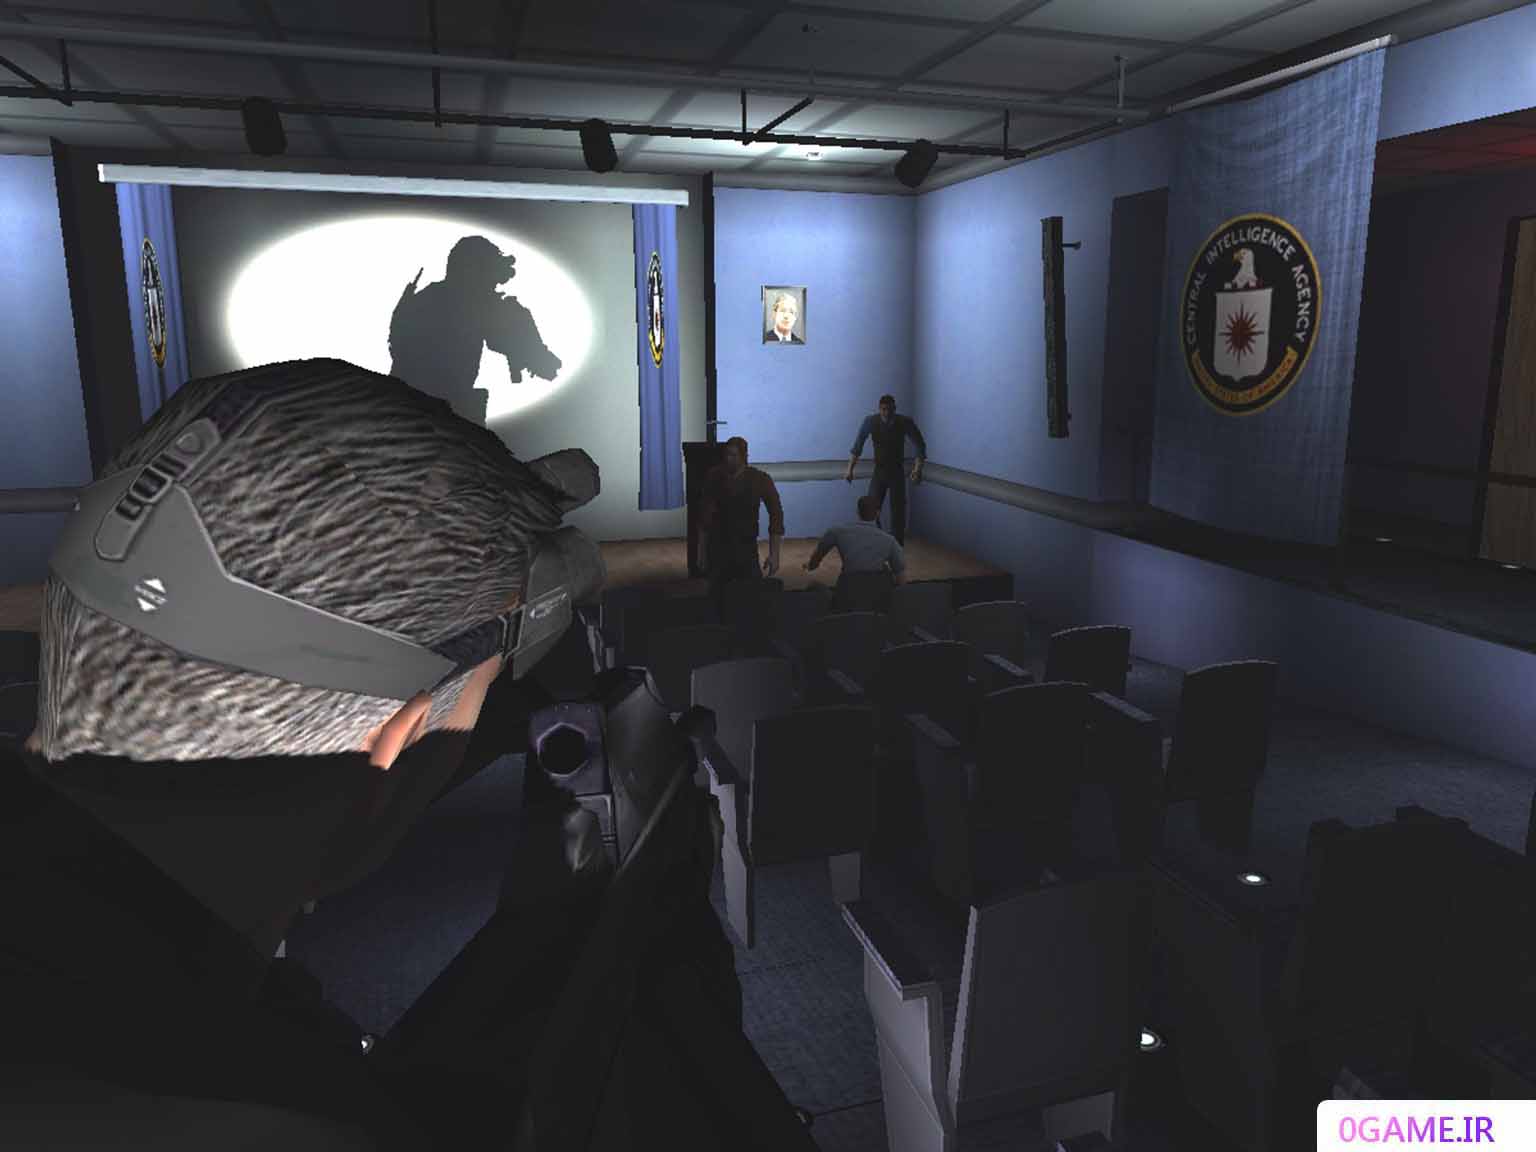 دانلود بازی اسپلینتر سل 1 (Tom Clancy's Splinter Cell) نسخه کامل برای کامپیوتر